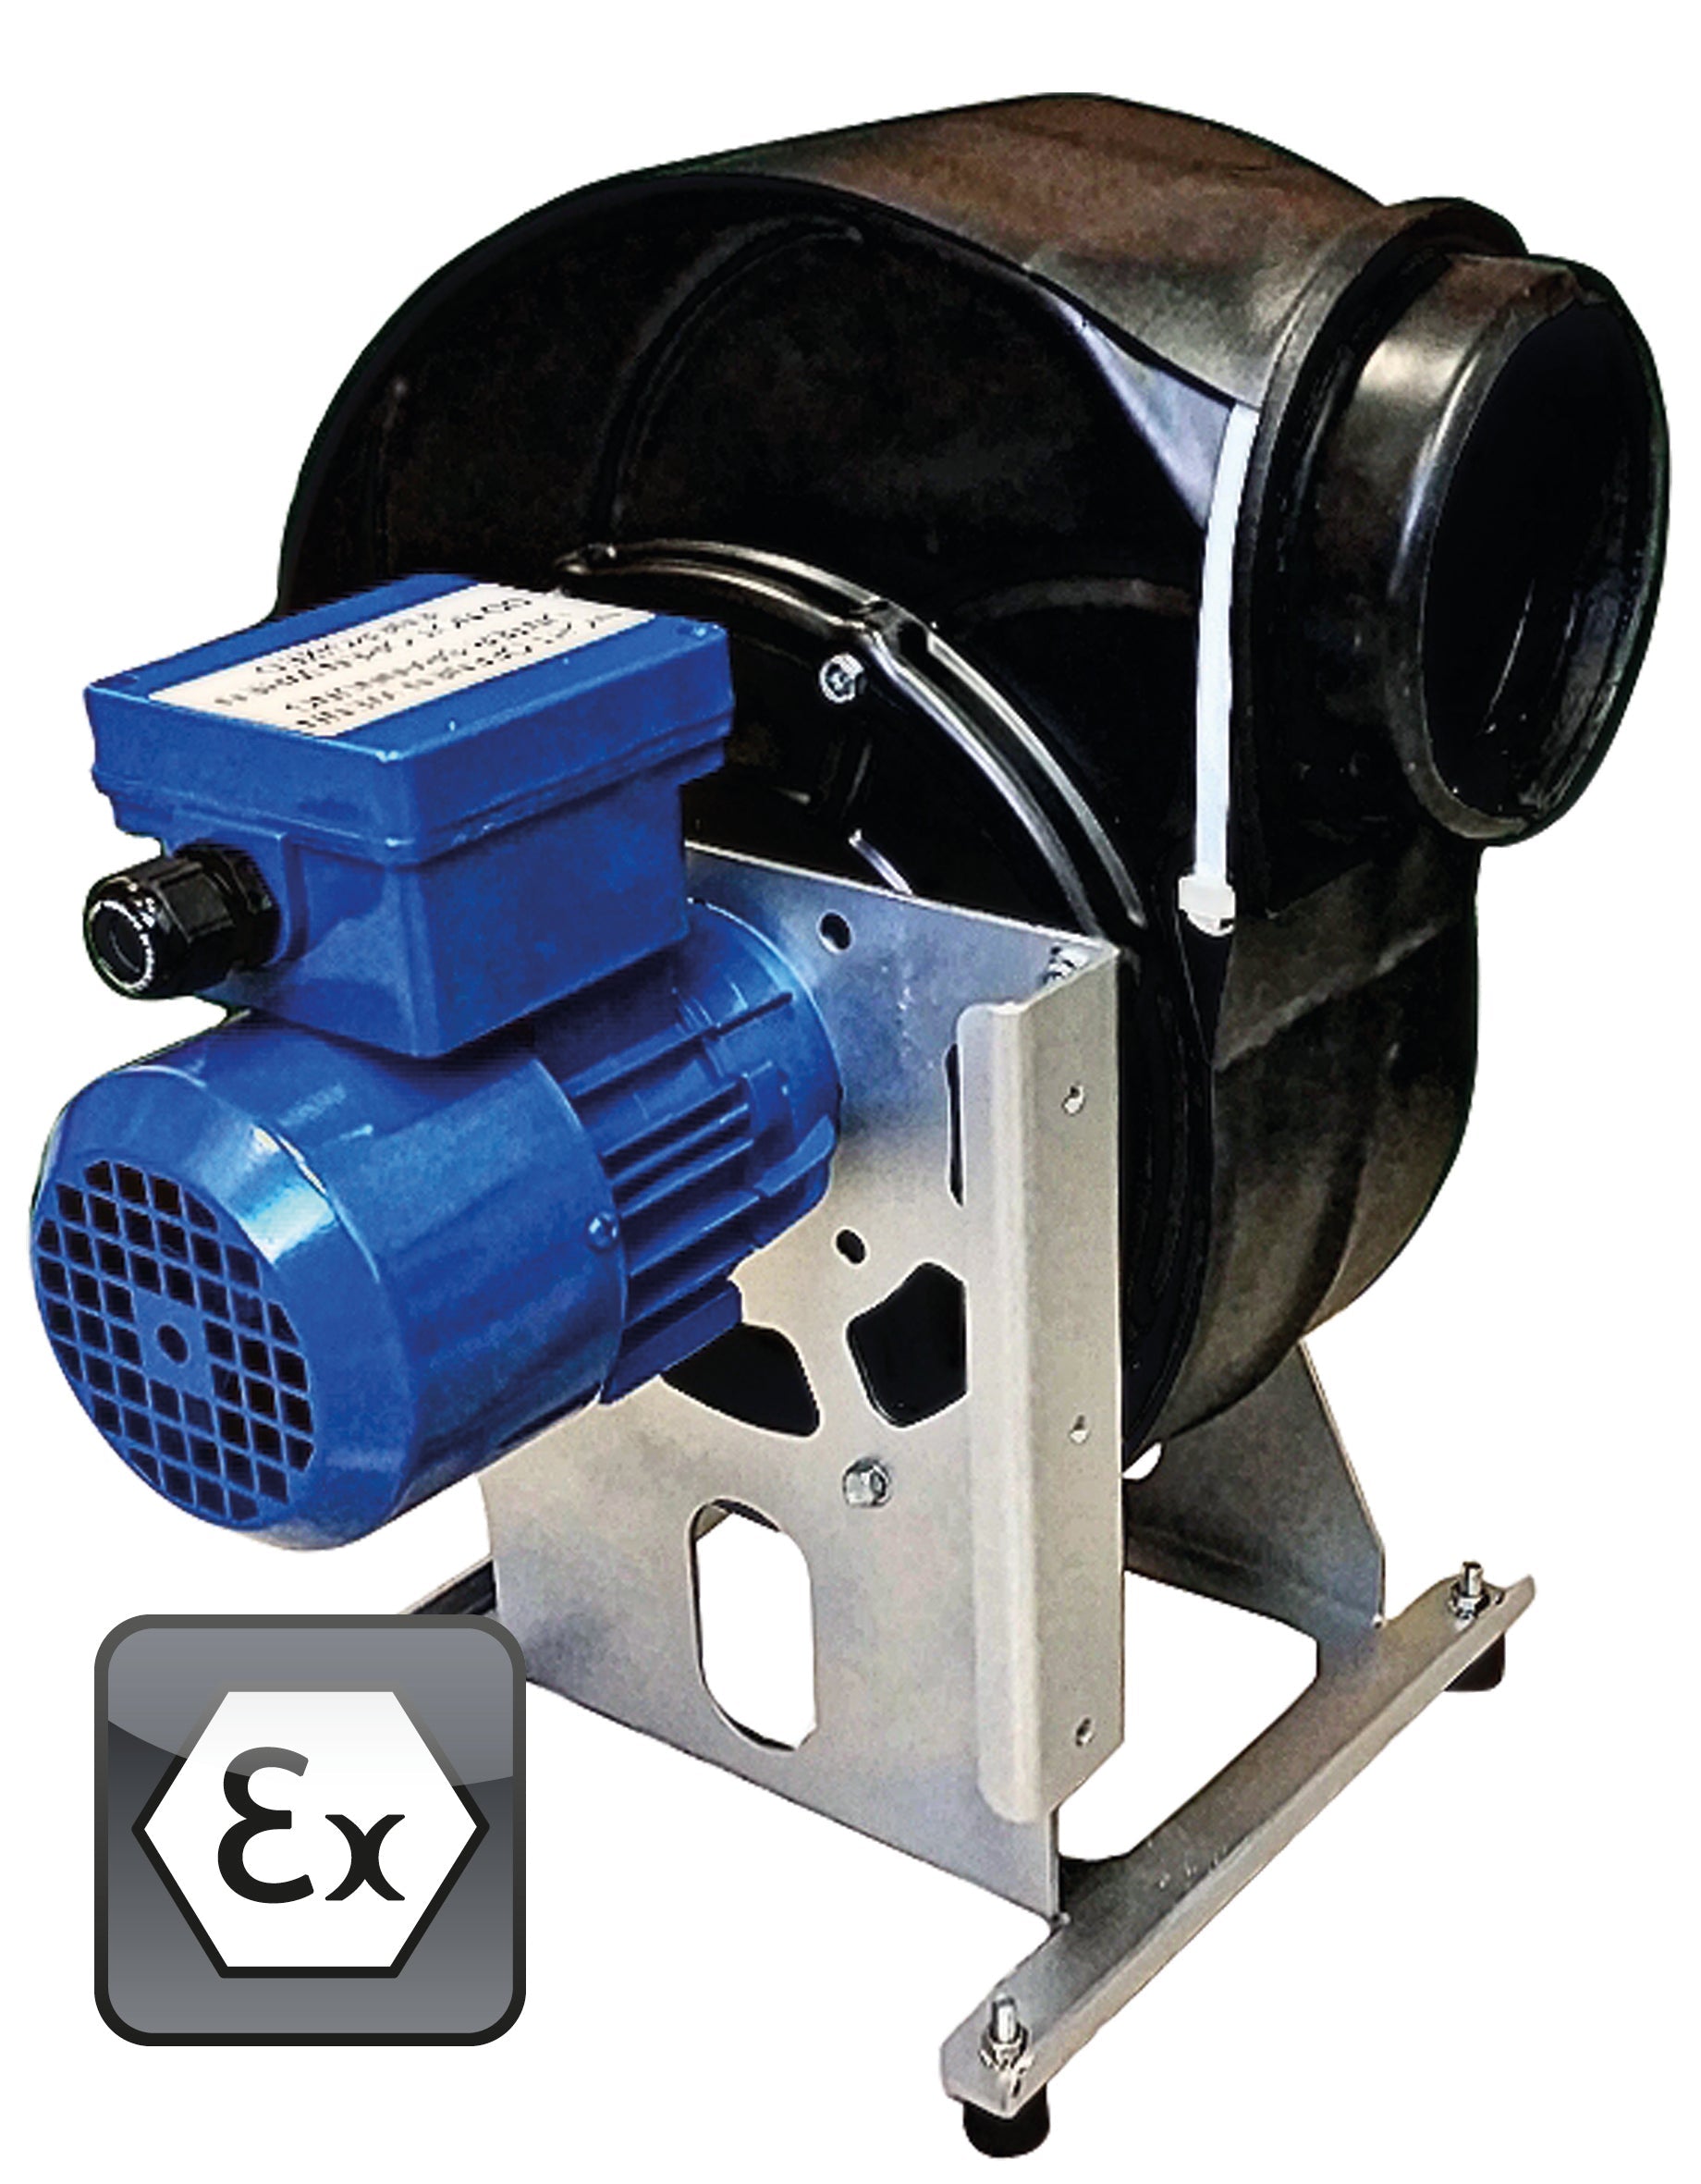 Ventilator Modell EP.VE.29425 für Gefahrstoffarbeitsplätze, Polypropylen